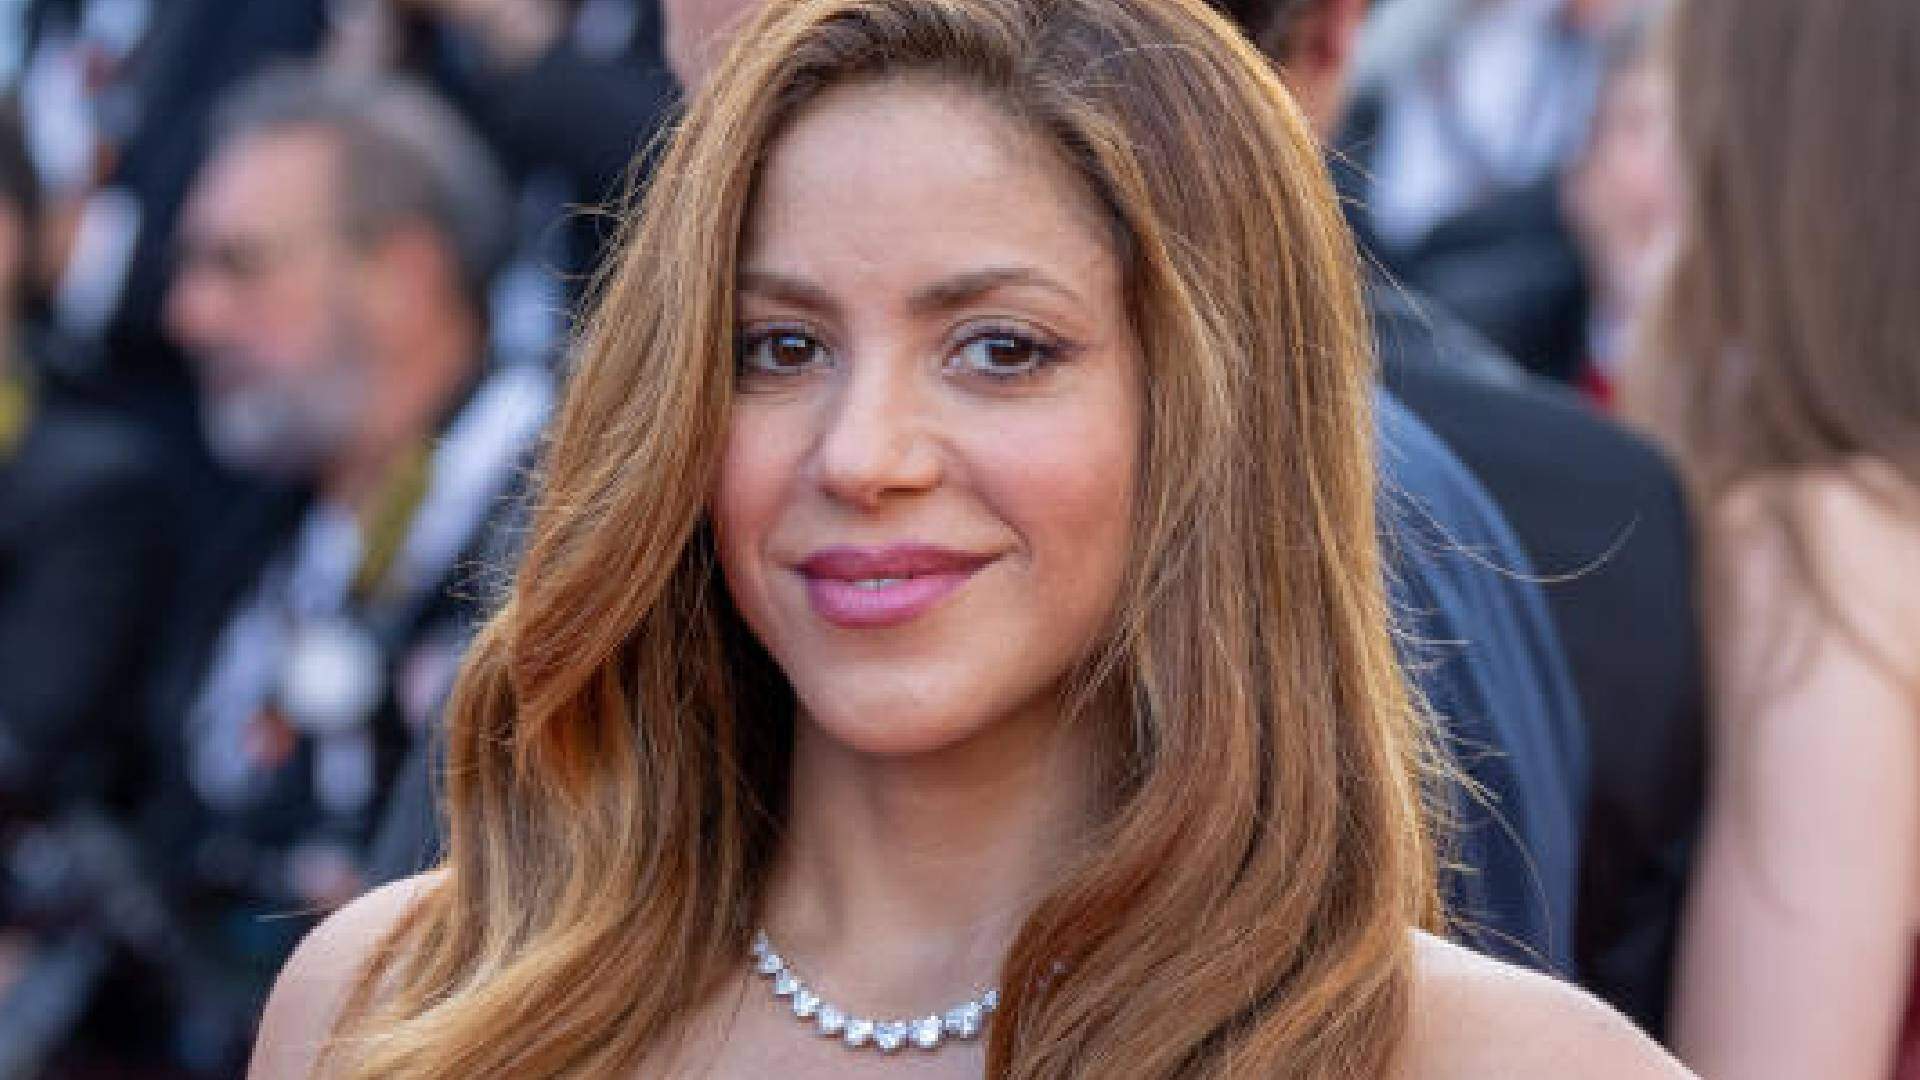 Quem é o novo affair de Shakira? Fotógrafo espanhol revela detalhes sobre suposto romance - Metropolitana FM